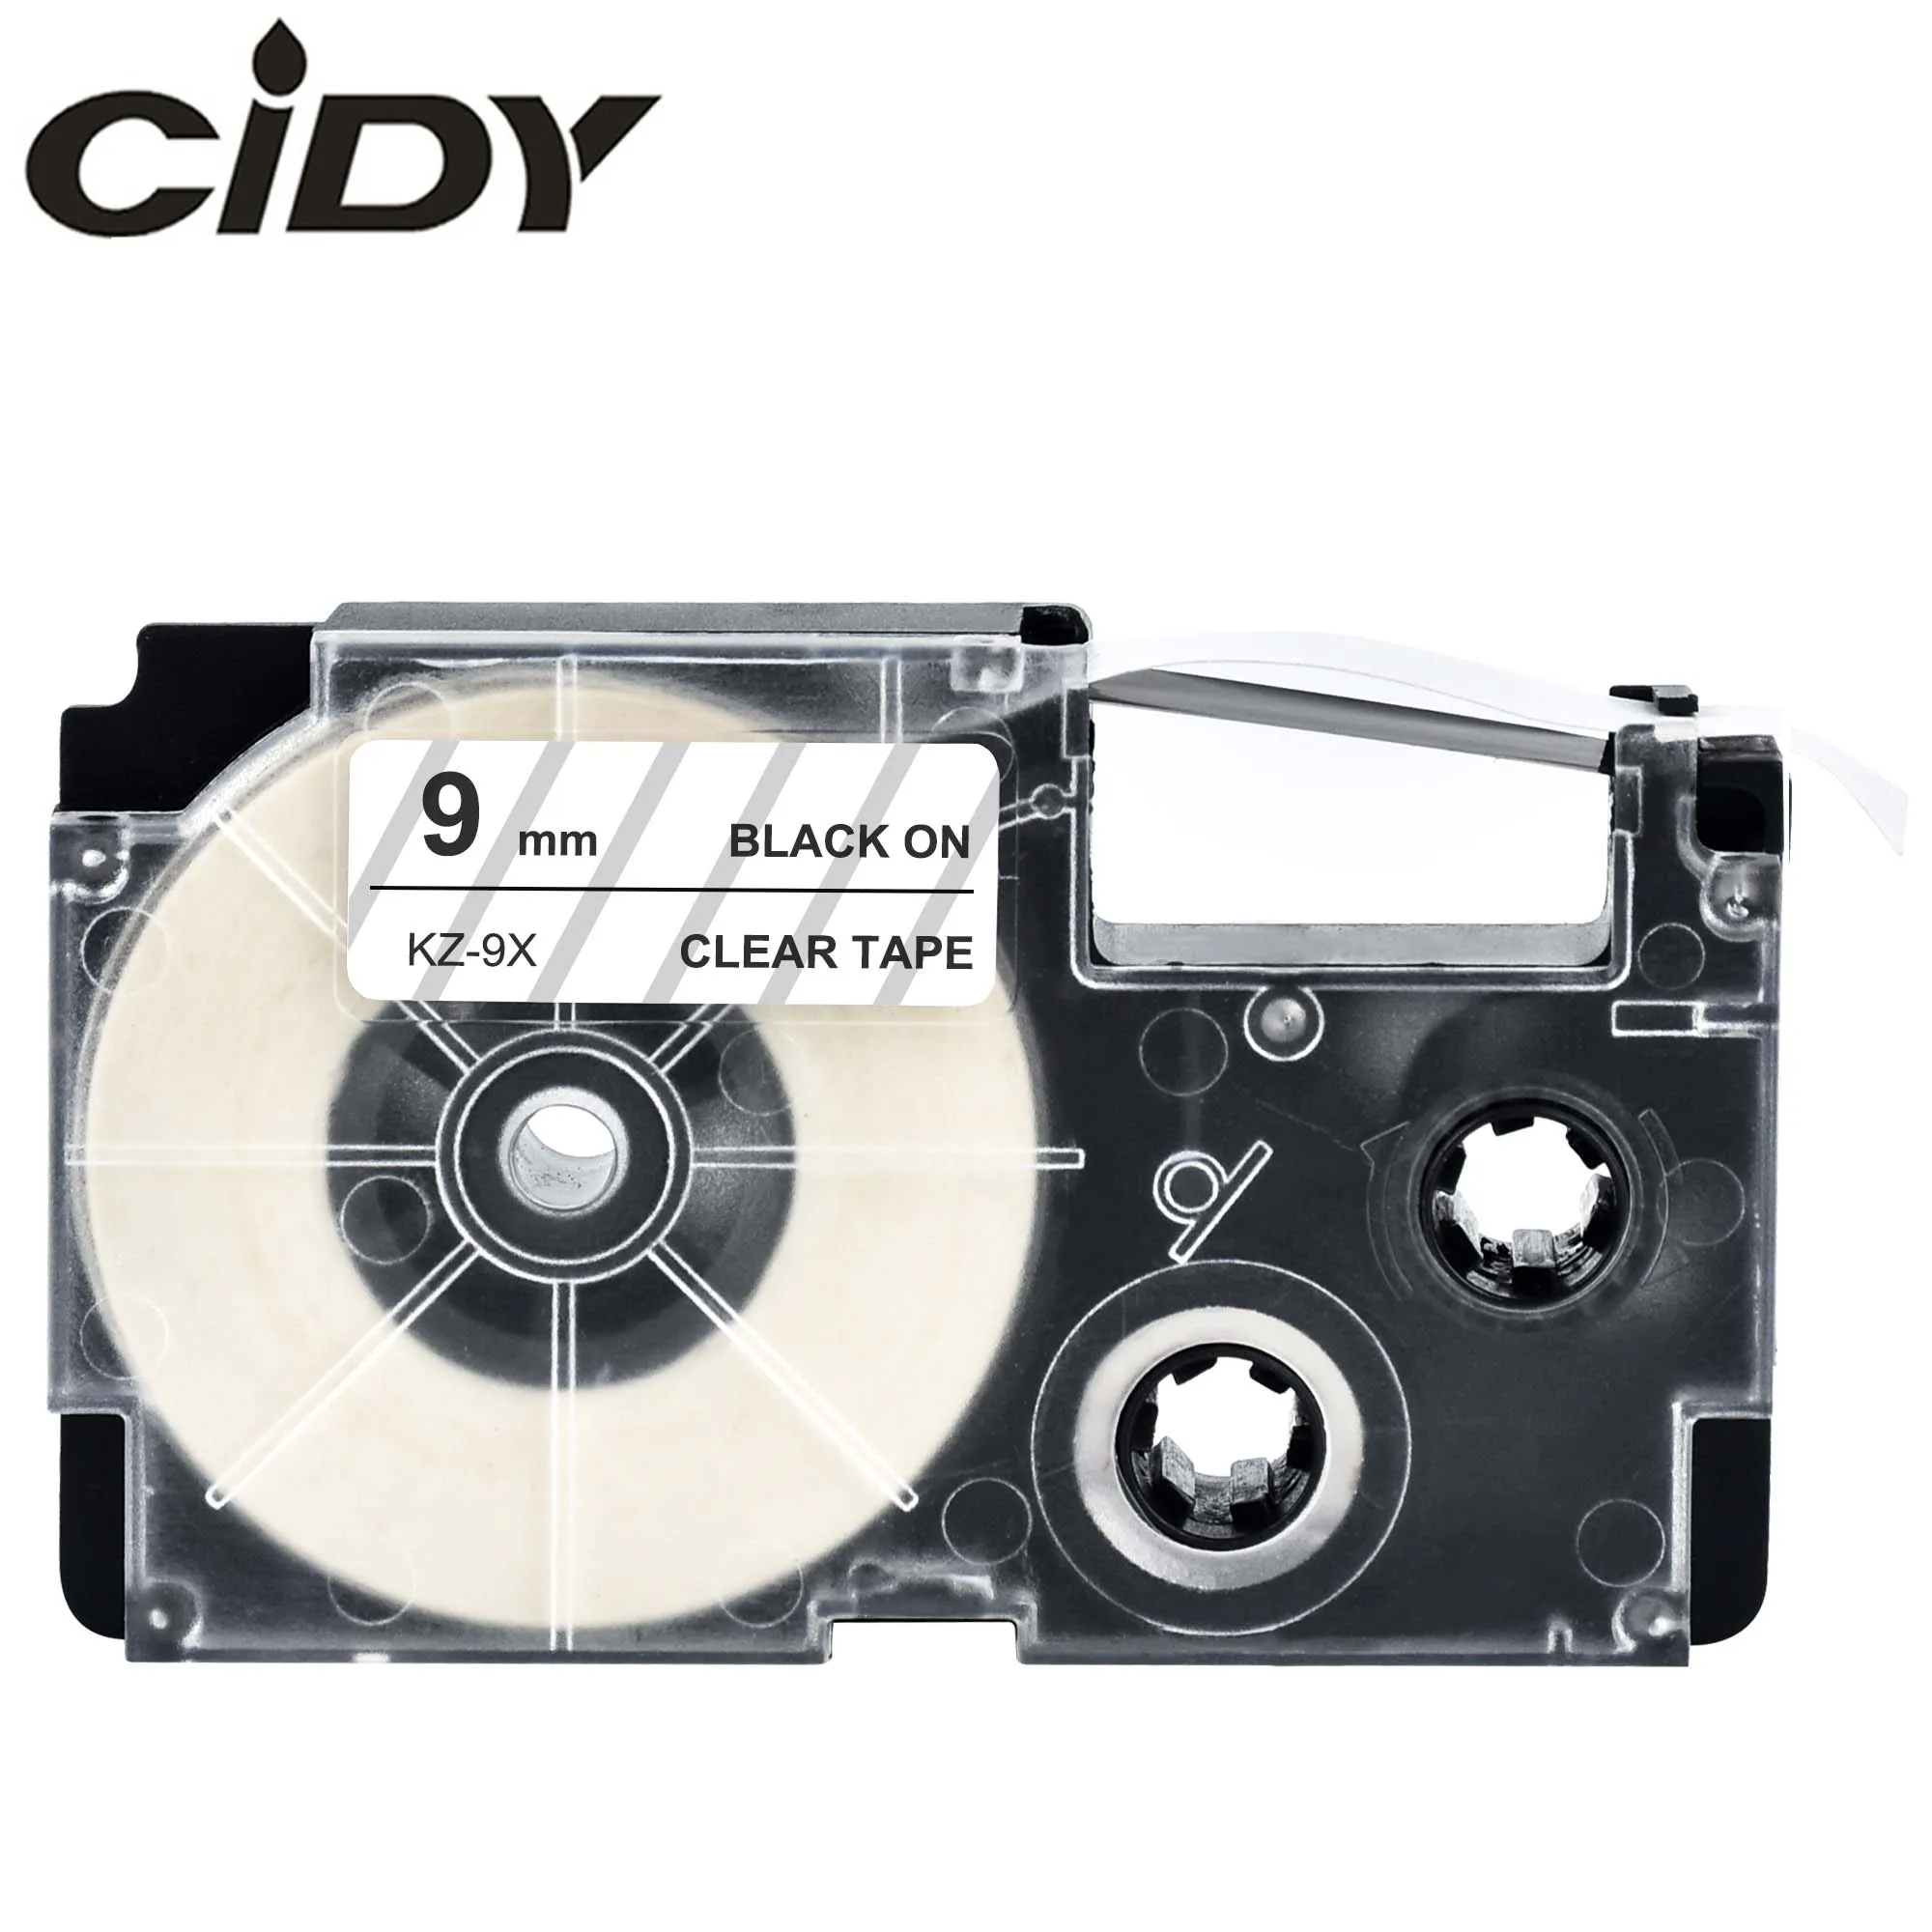 Cidy Лидер продаж 10 шт./лот Совместимость XR 9x xr9x 9 мм черный на прозрачном Клейкие ленты картридж xr-9x для EZ-label принтер kl-120